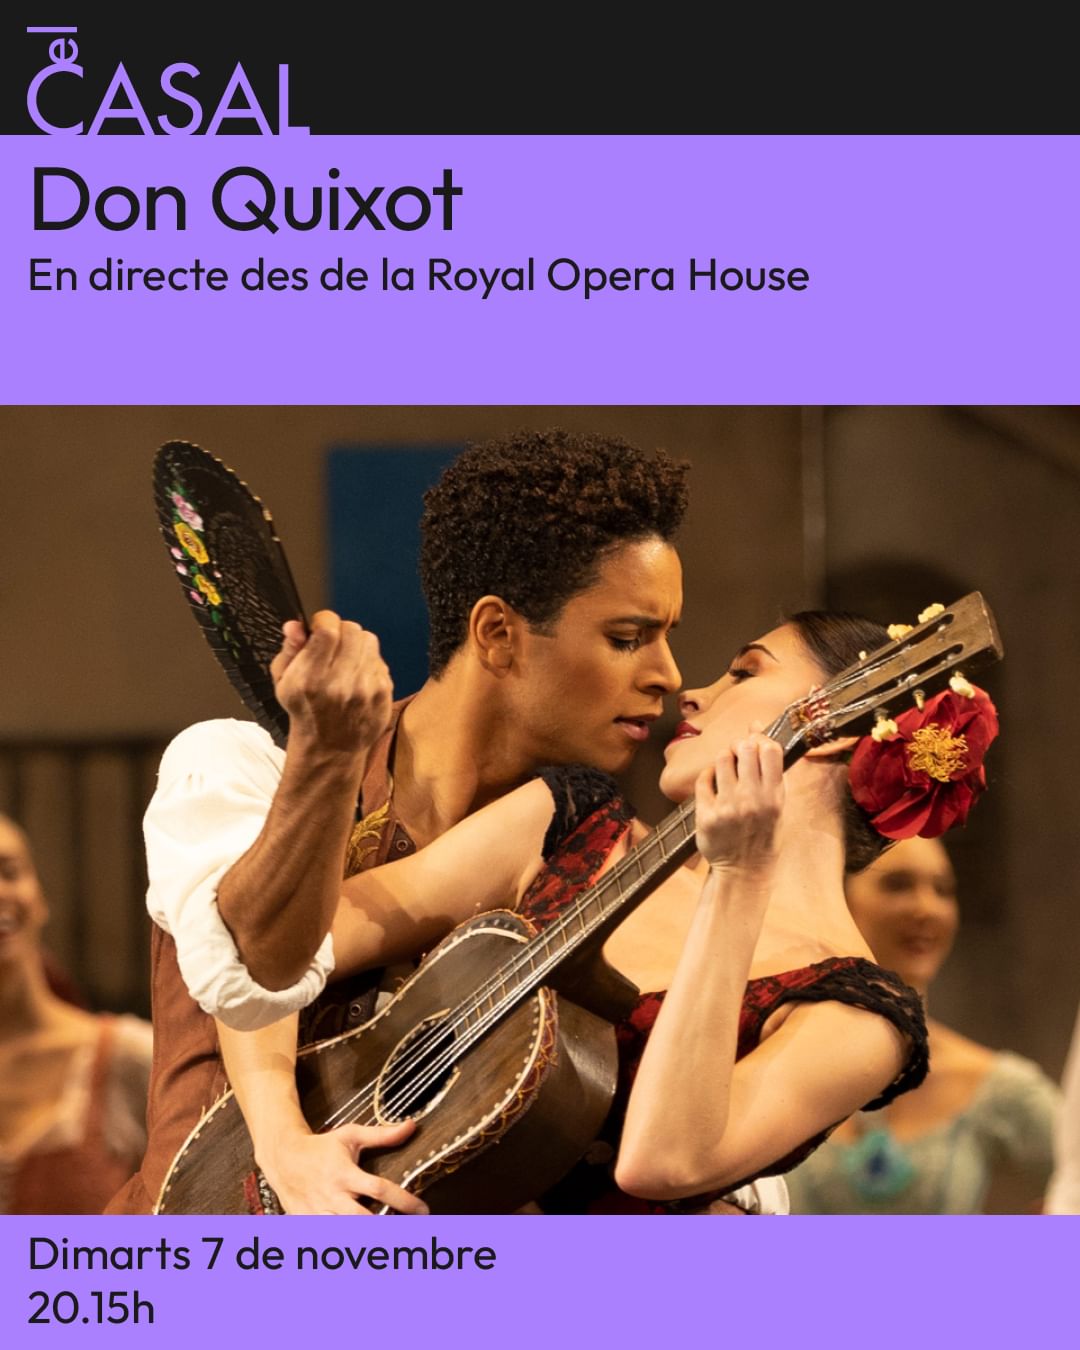 Cartell d'Òpera al Casal, amb Don Quixot